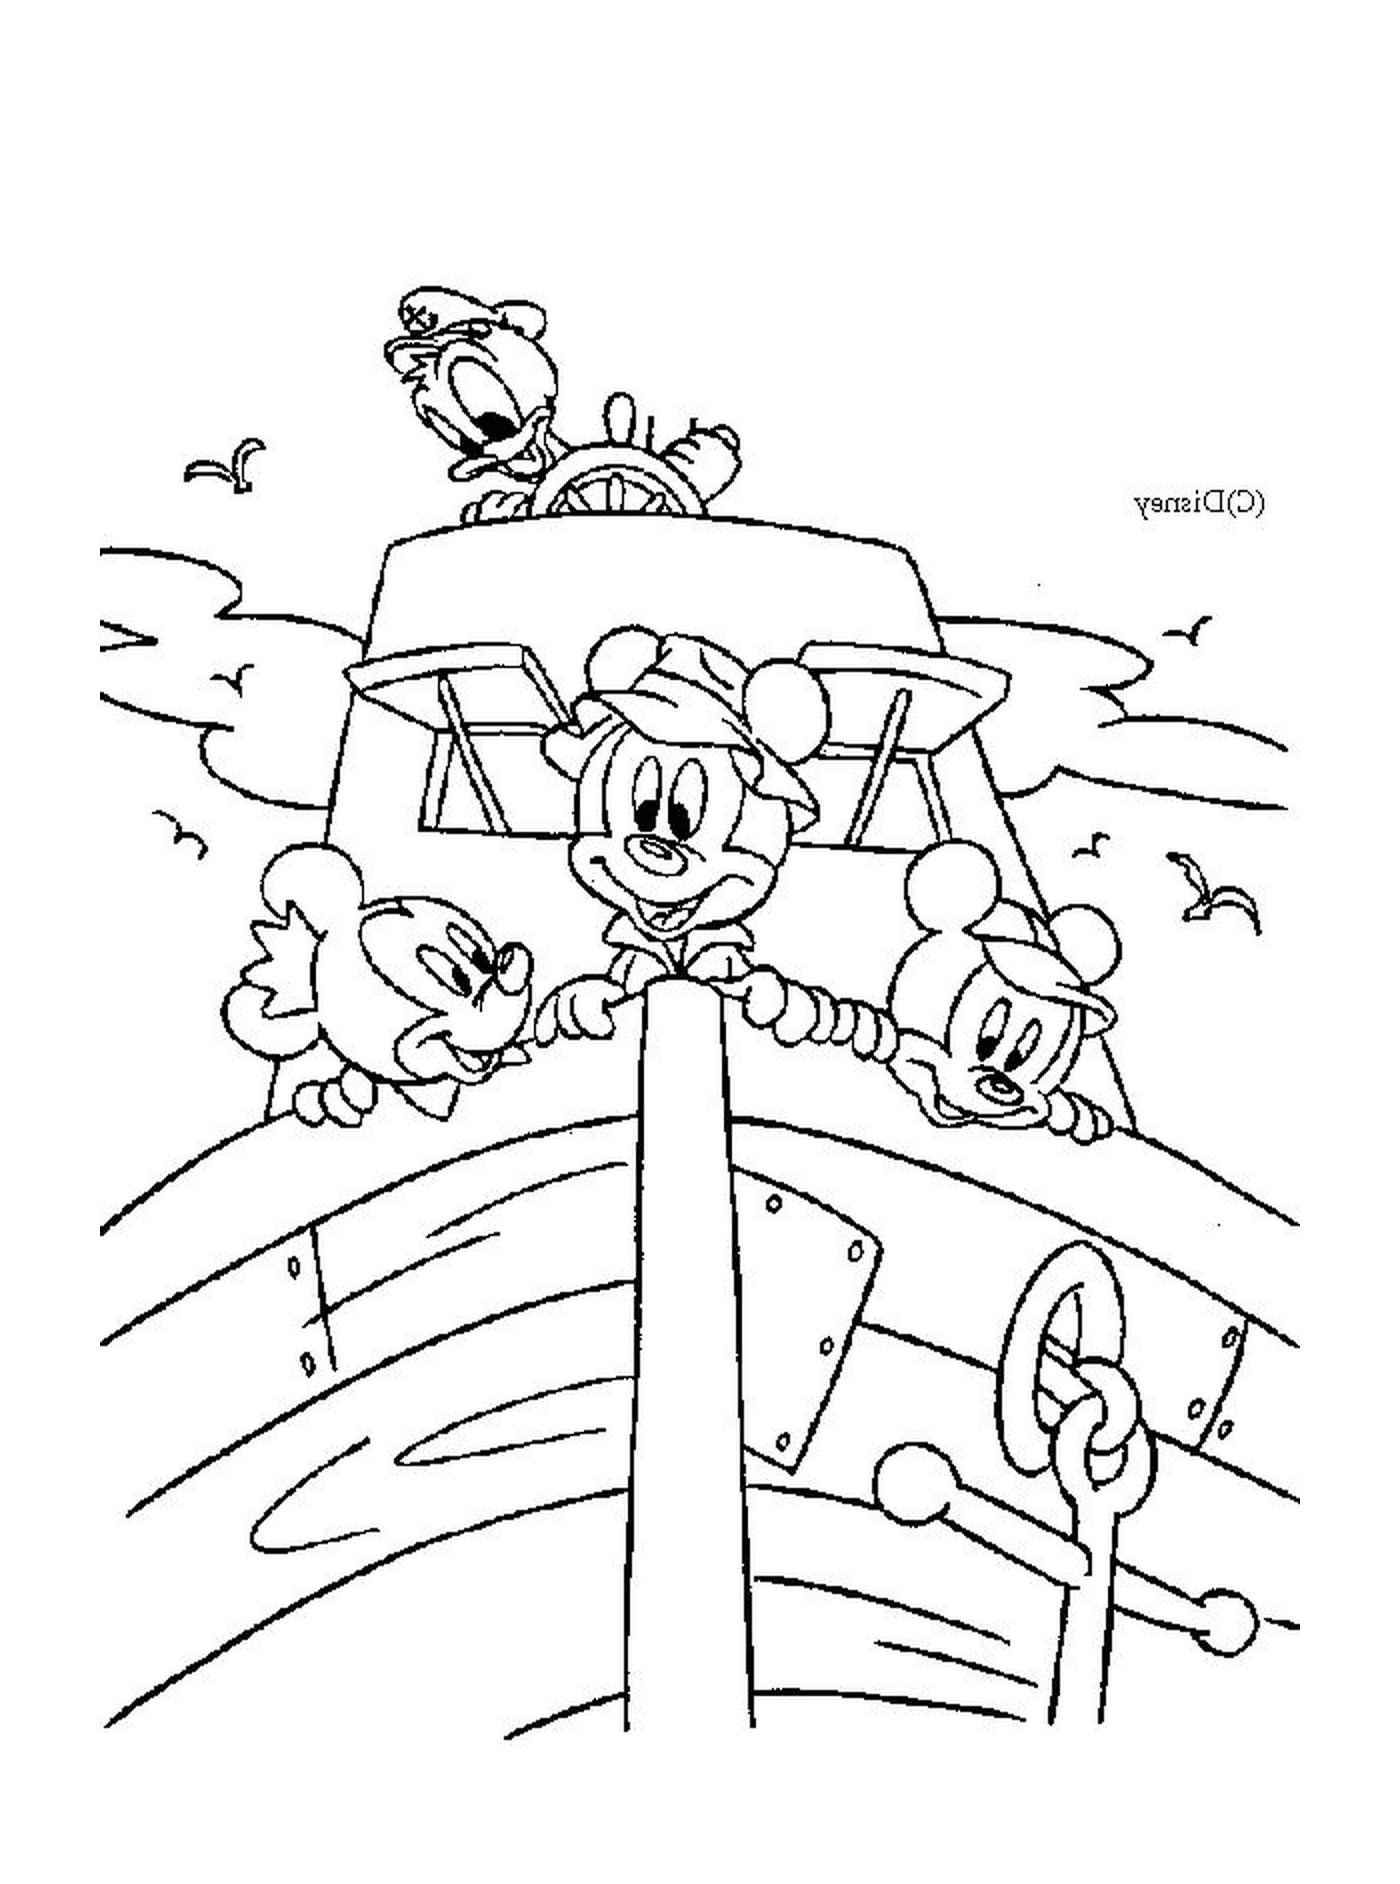  Группа Микки Мауса и его друзей на лодке 